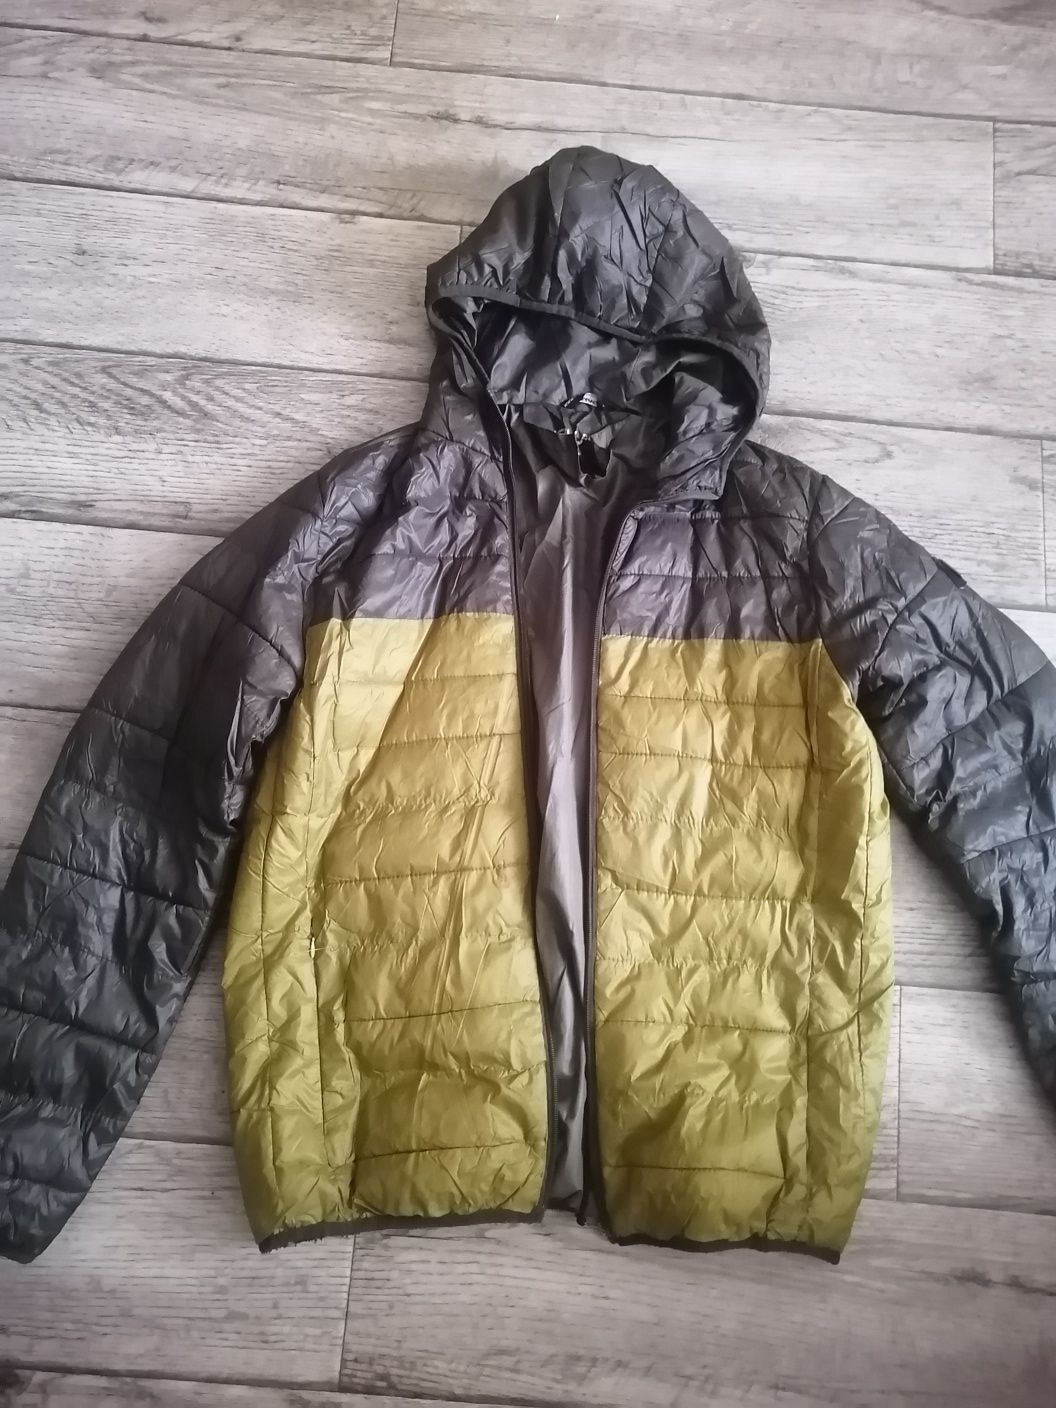 Мужские куртки, зима, размер 48-50, недорого.